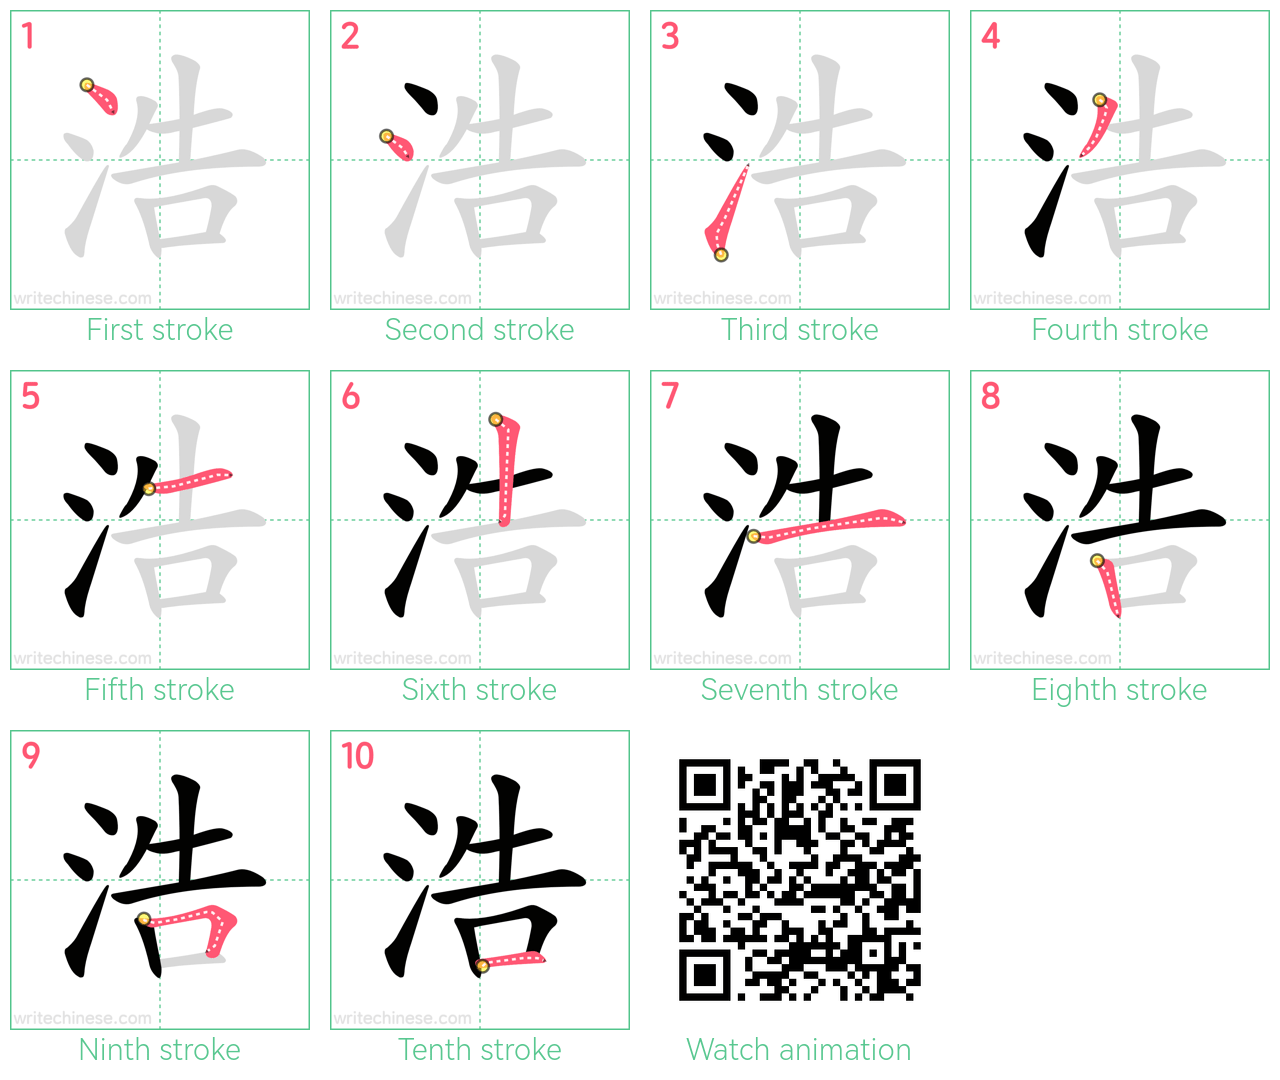 浩 step-by-step stroke order diagrams